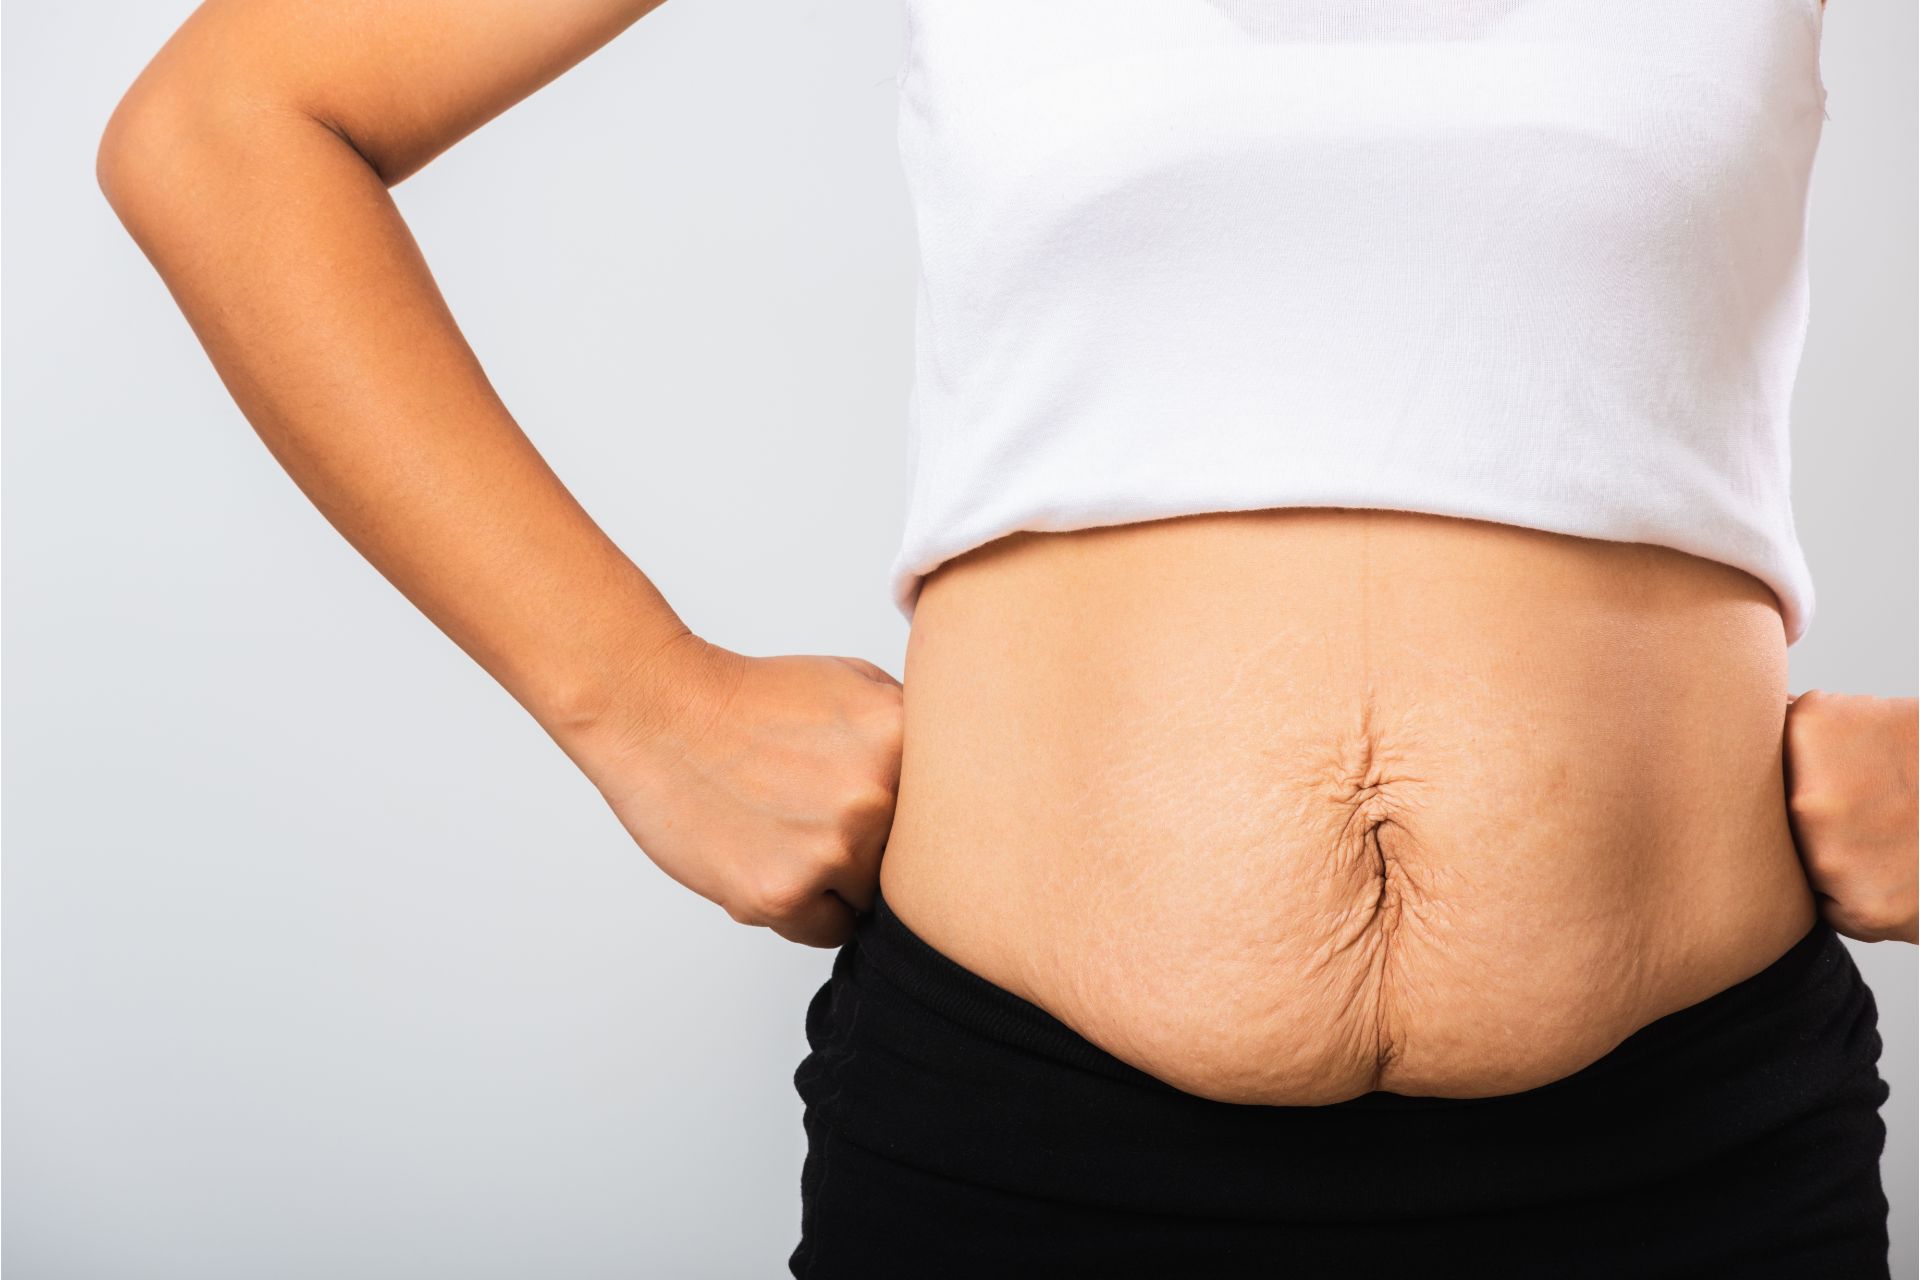 Abdominoplastia, vatsan muotoilu, ylimääräisen ihon poistaminen vatsan alueelta